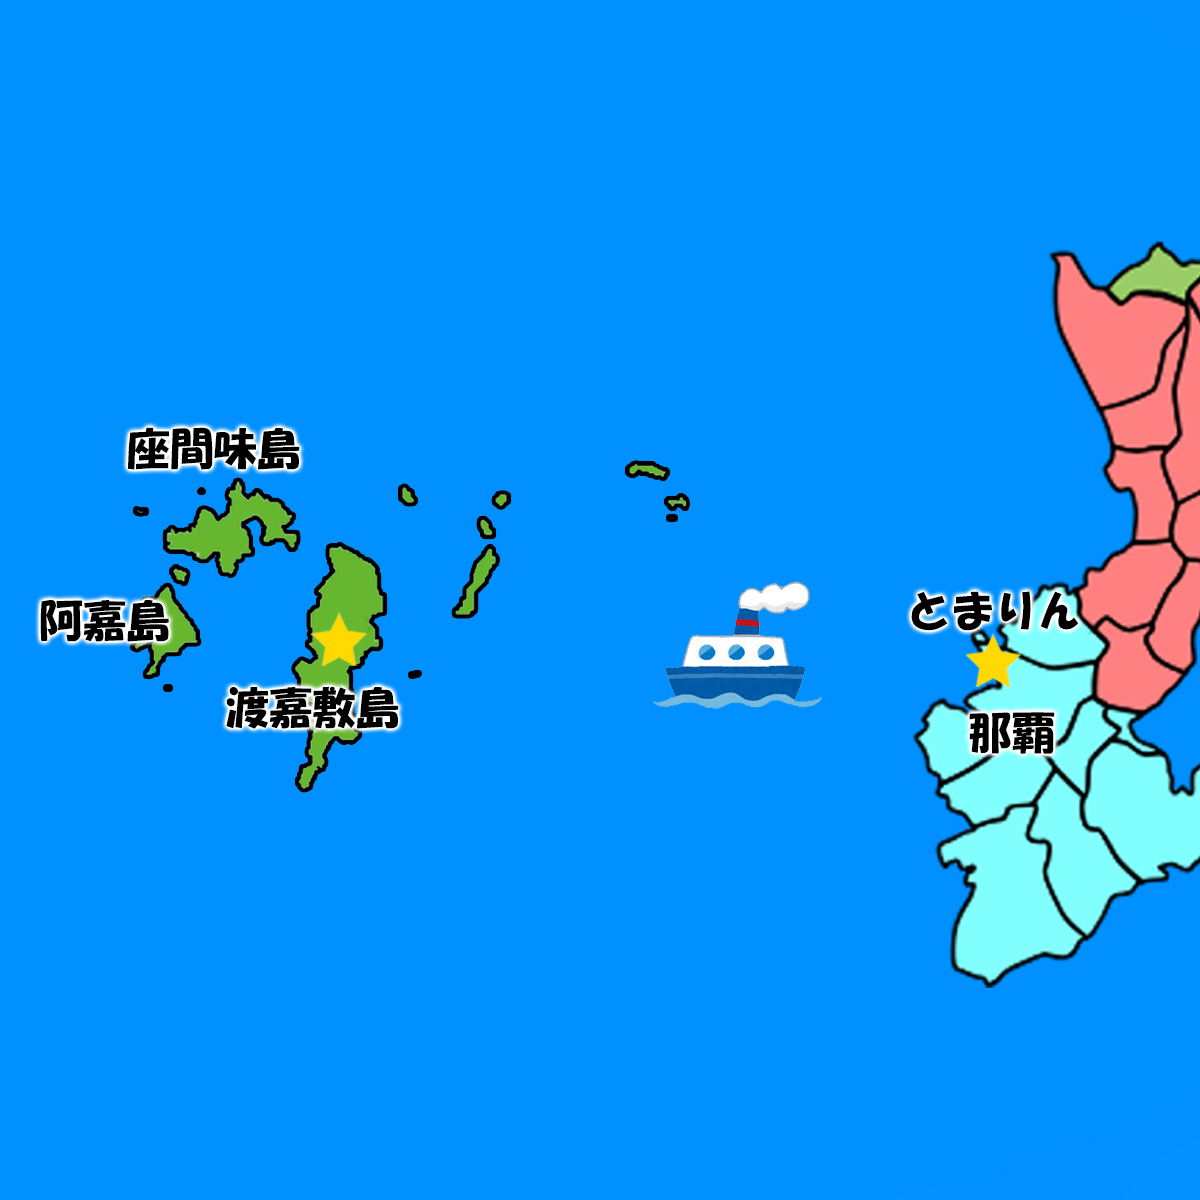 慶良間諸島 座間味島 阿嘉島 渡嘉敷島 比較してみた スキューバダイビング情報